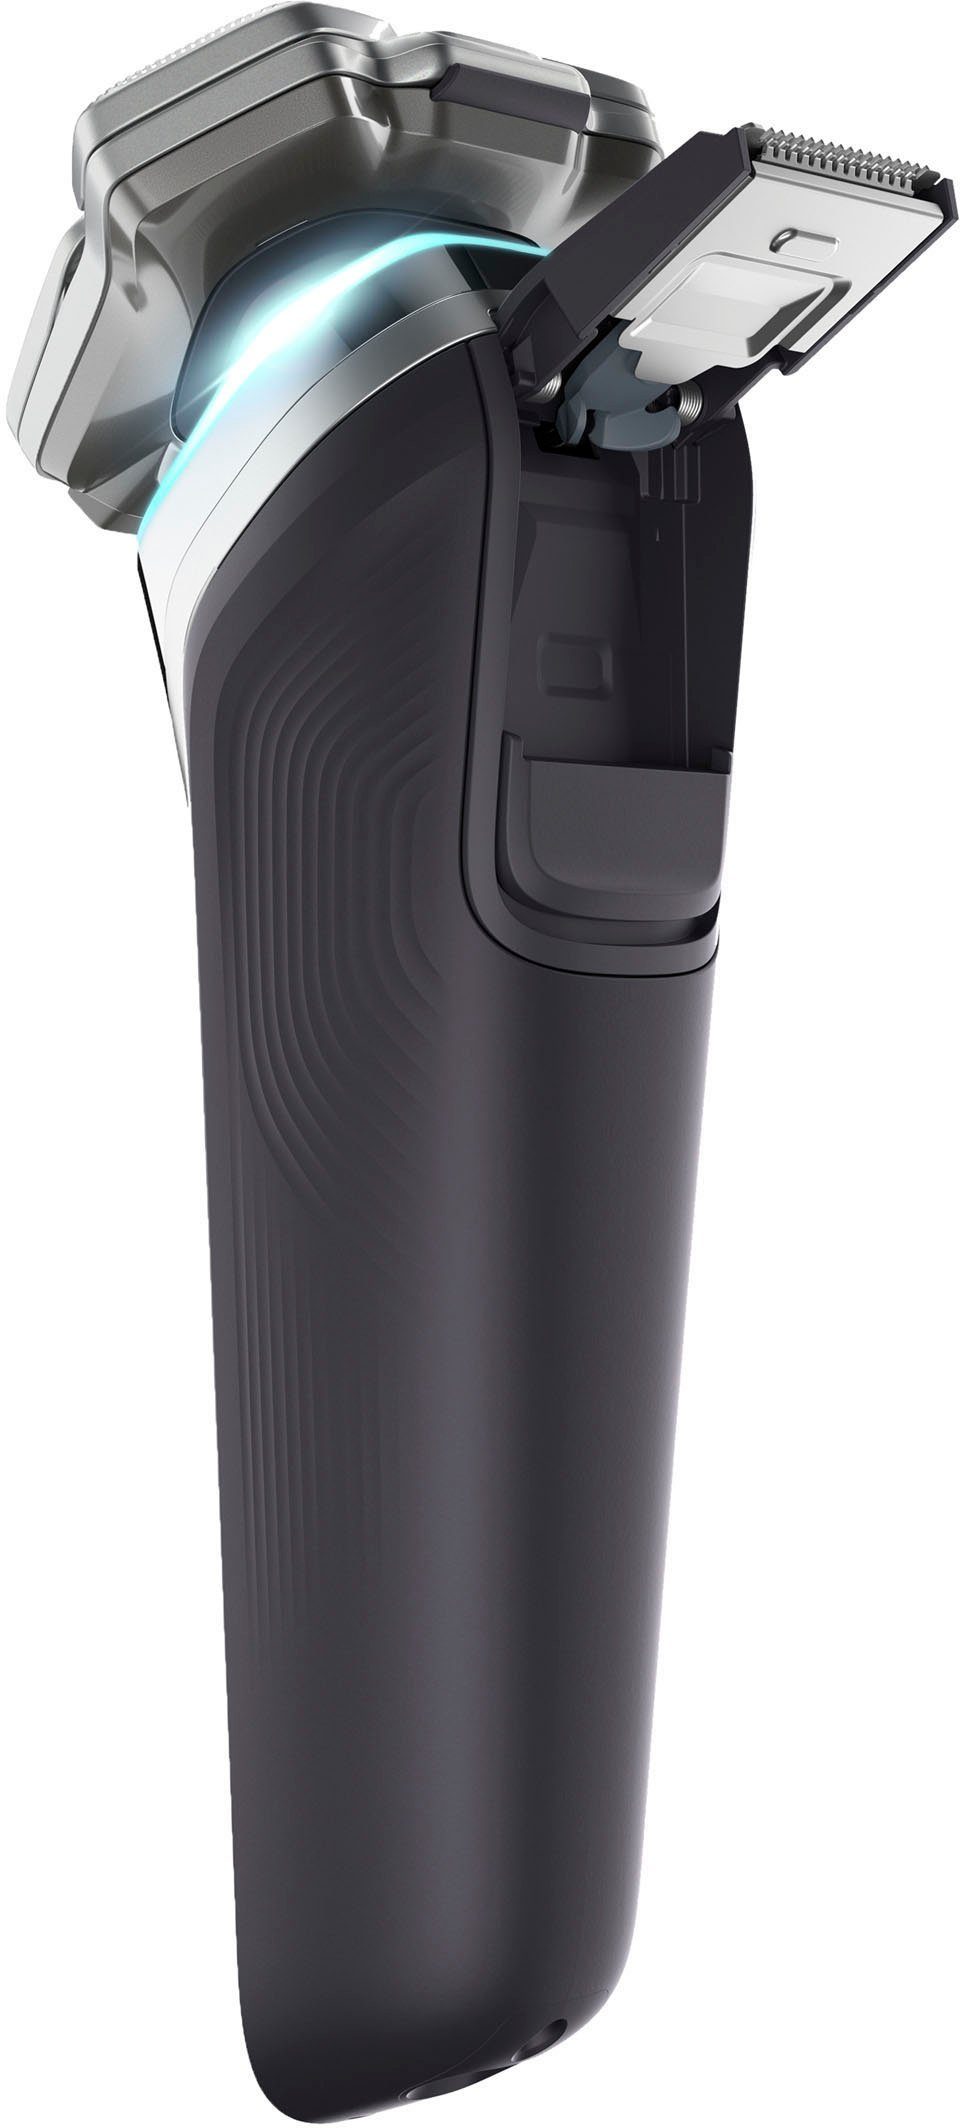 S9976/55, Elektrorasierer Etui, Philips Shaver Ladestand, mit Series integrierter 2 Präzisionstrimmer, SkinIQ Reinigungskartuschen, Technologie 9000